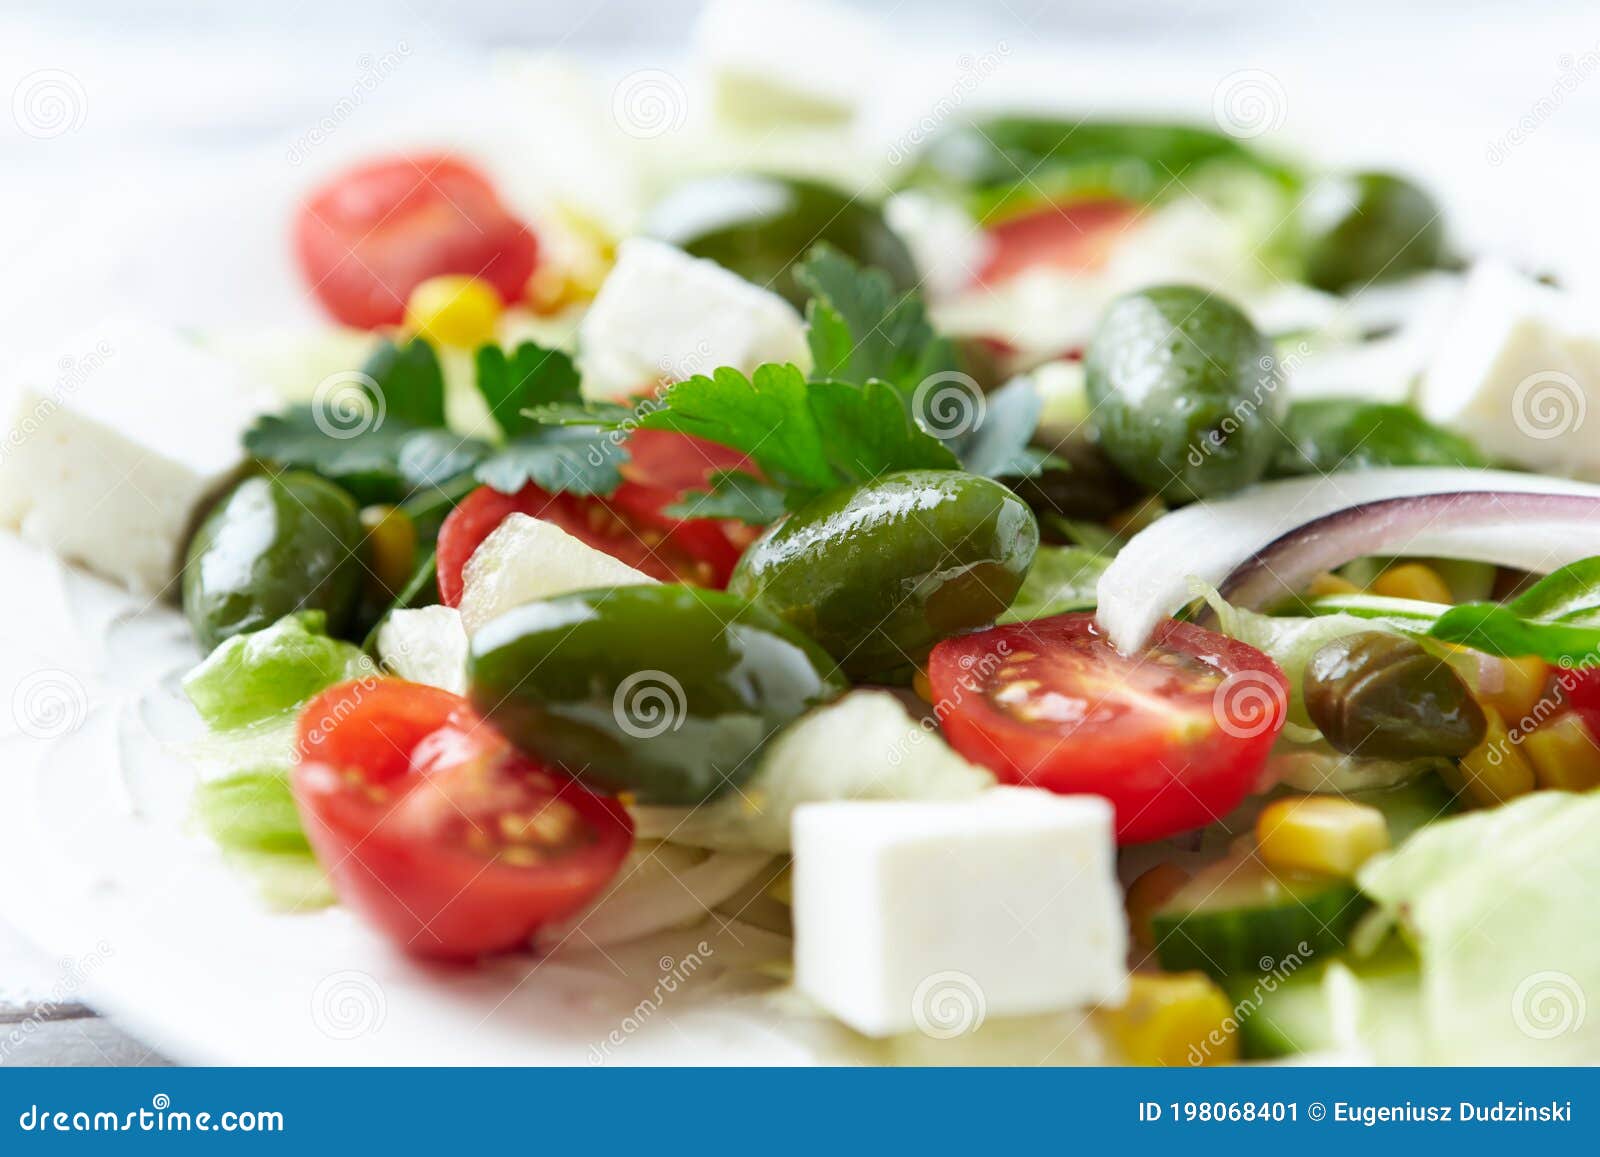 Recette Salade verte aux tomates cerises, concombre, radis, féta et graines